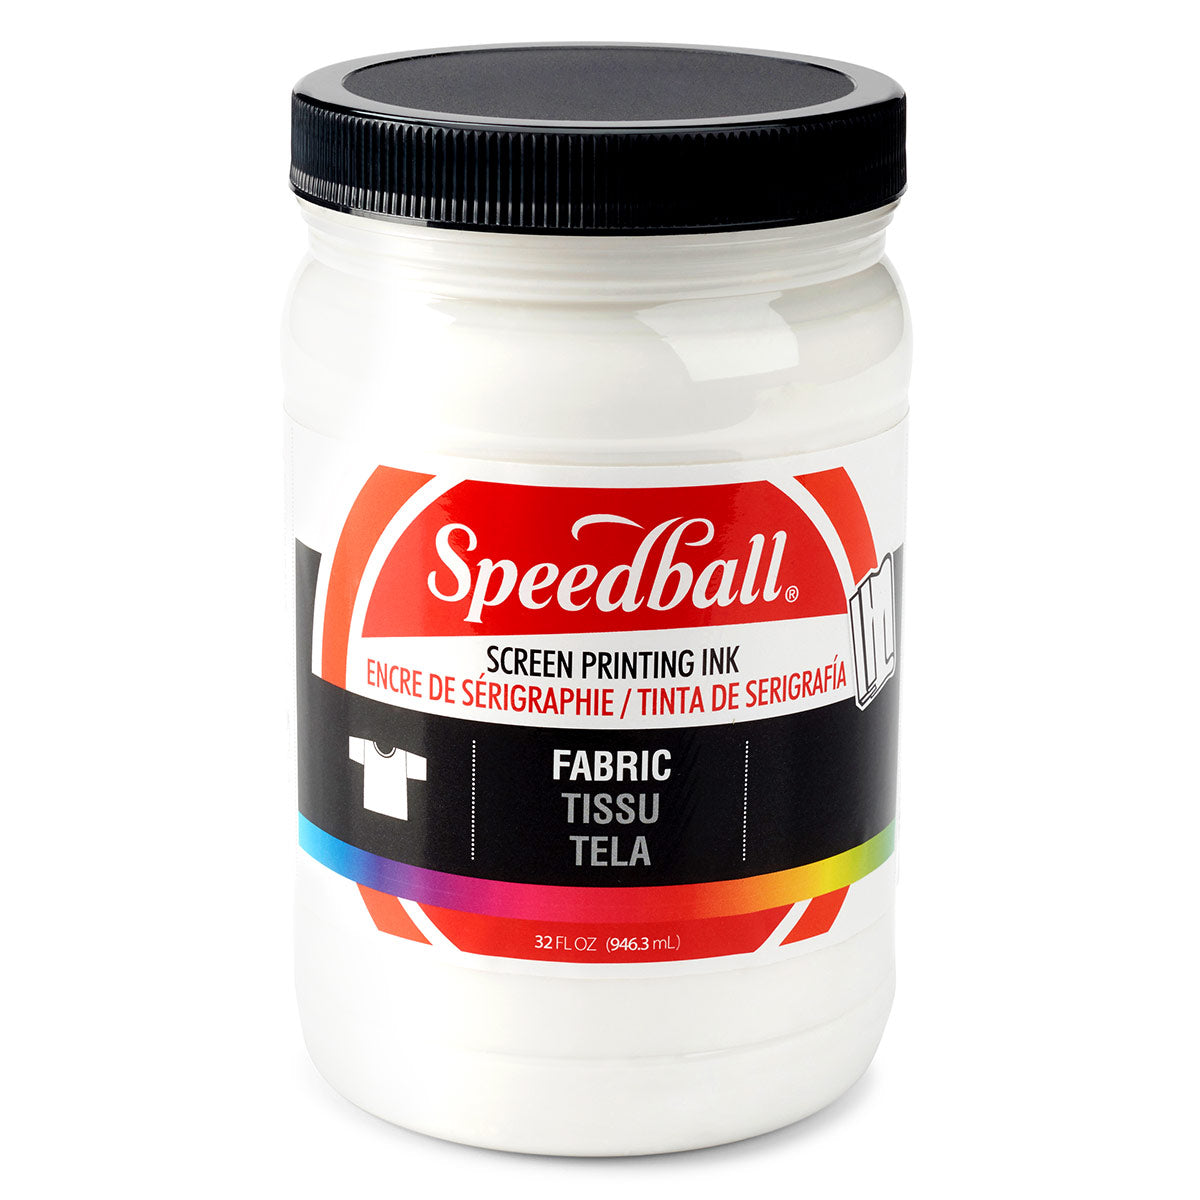 Speedball-Inchiostro per stampa su schermo in tessuto 946ml (32oz) -Bianco